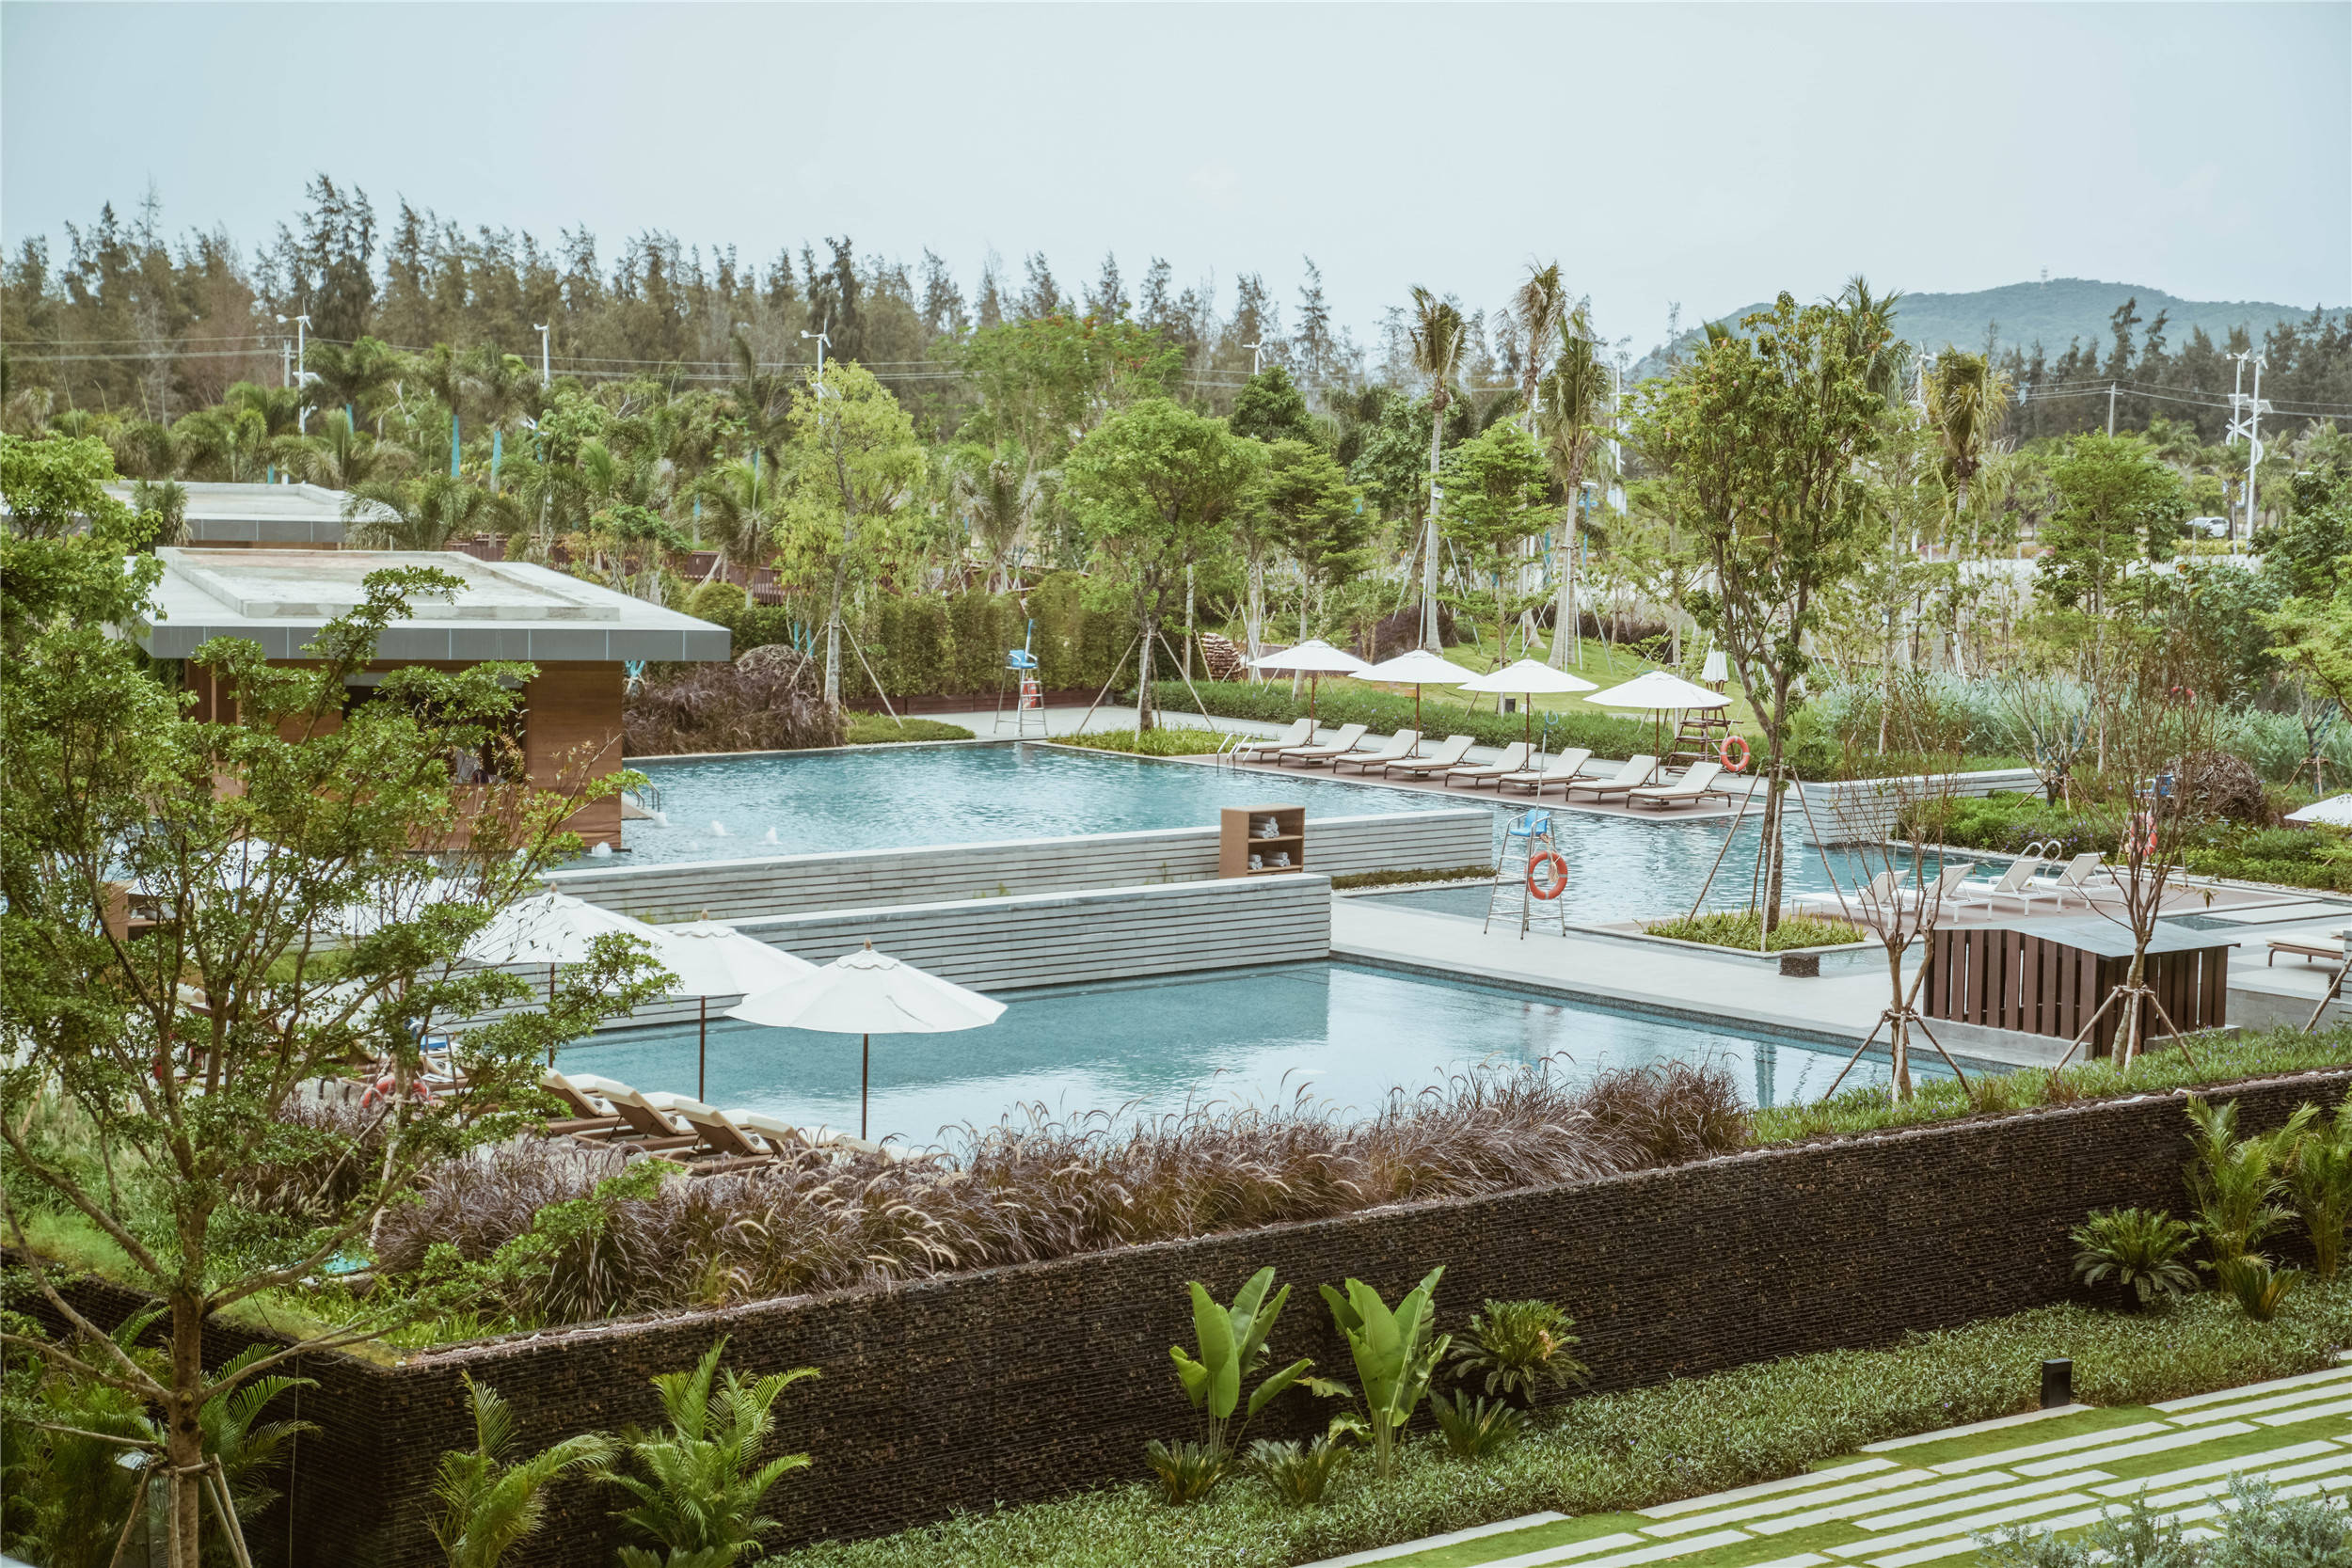 三亚首家野奢生态酒店,绿植缠绕犹如走进森林氧吧,度假首选之地